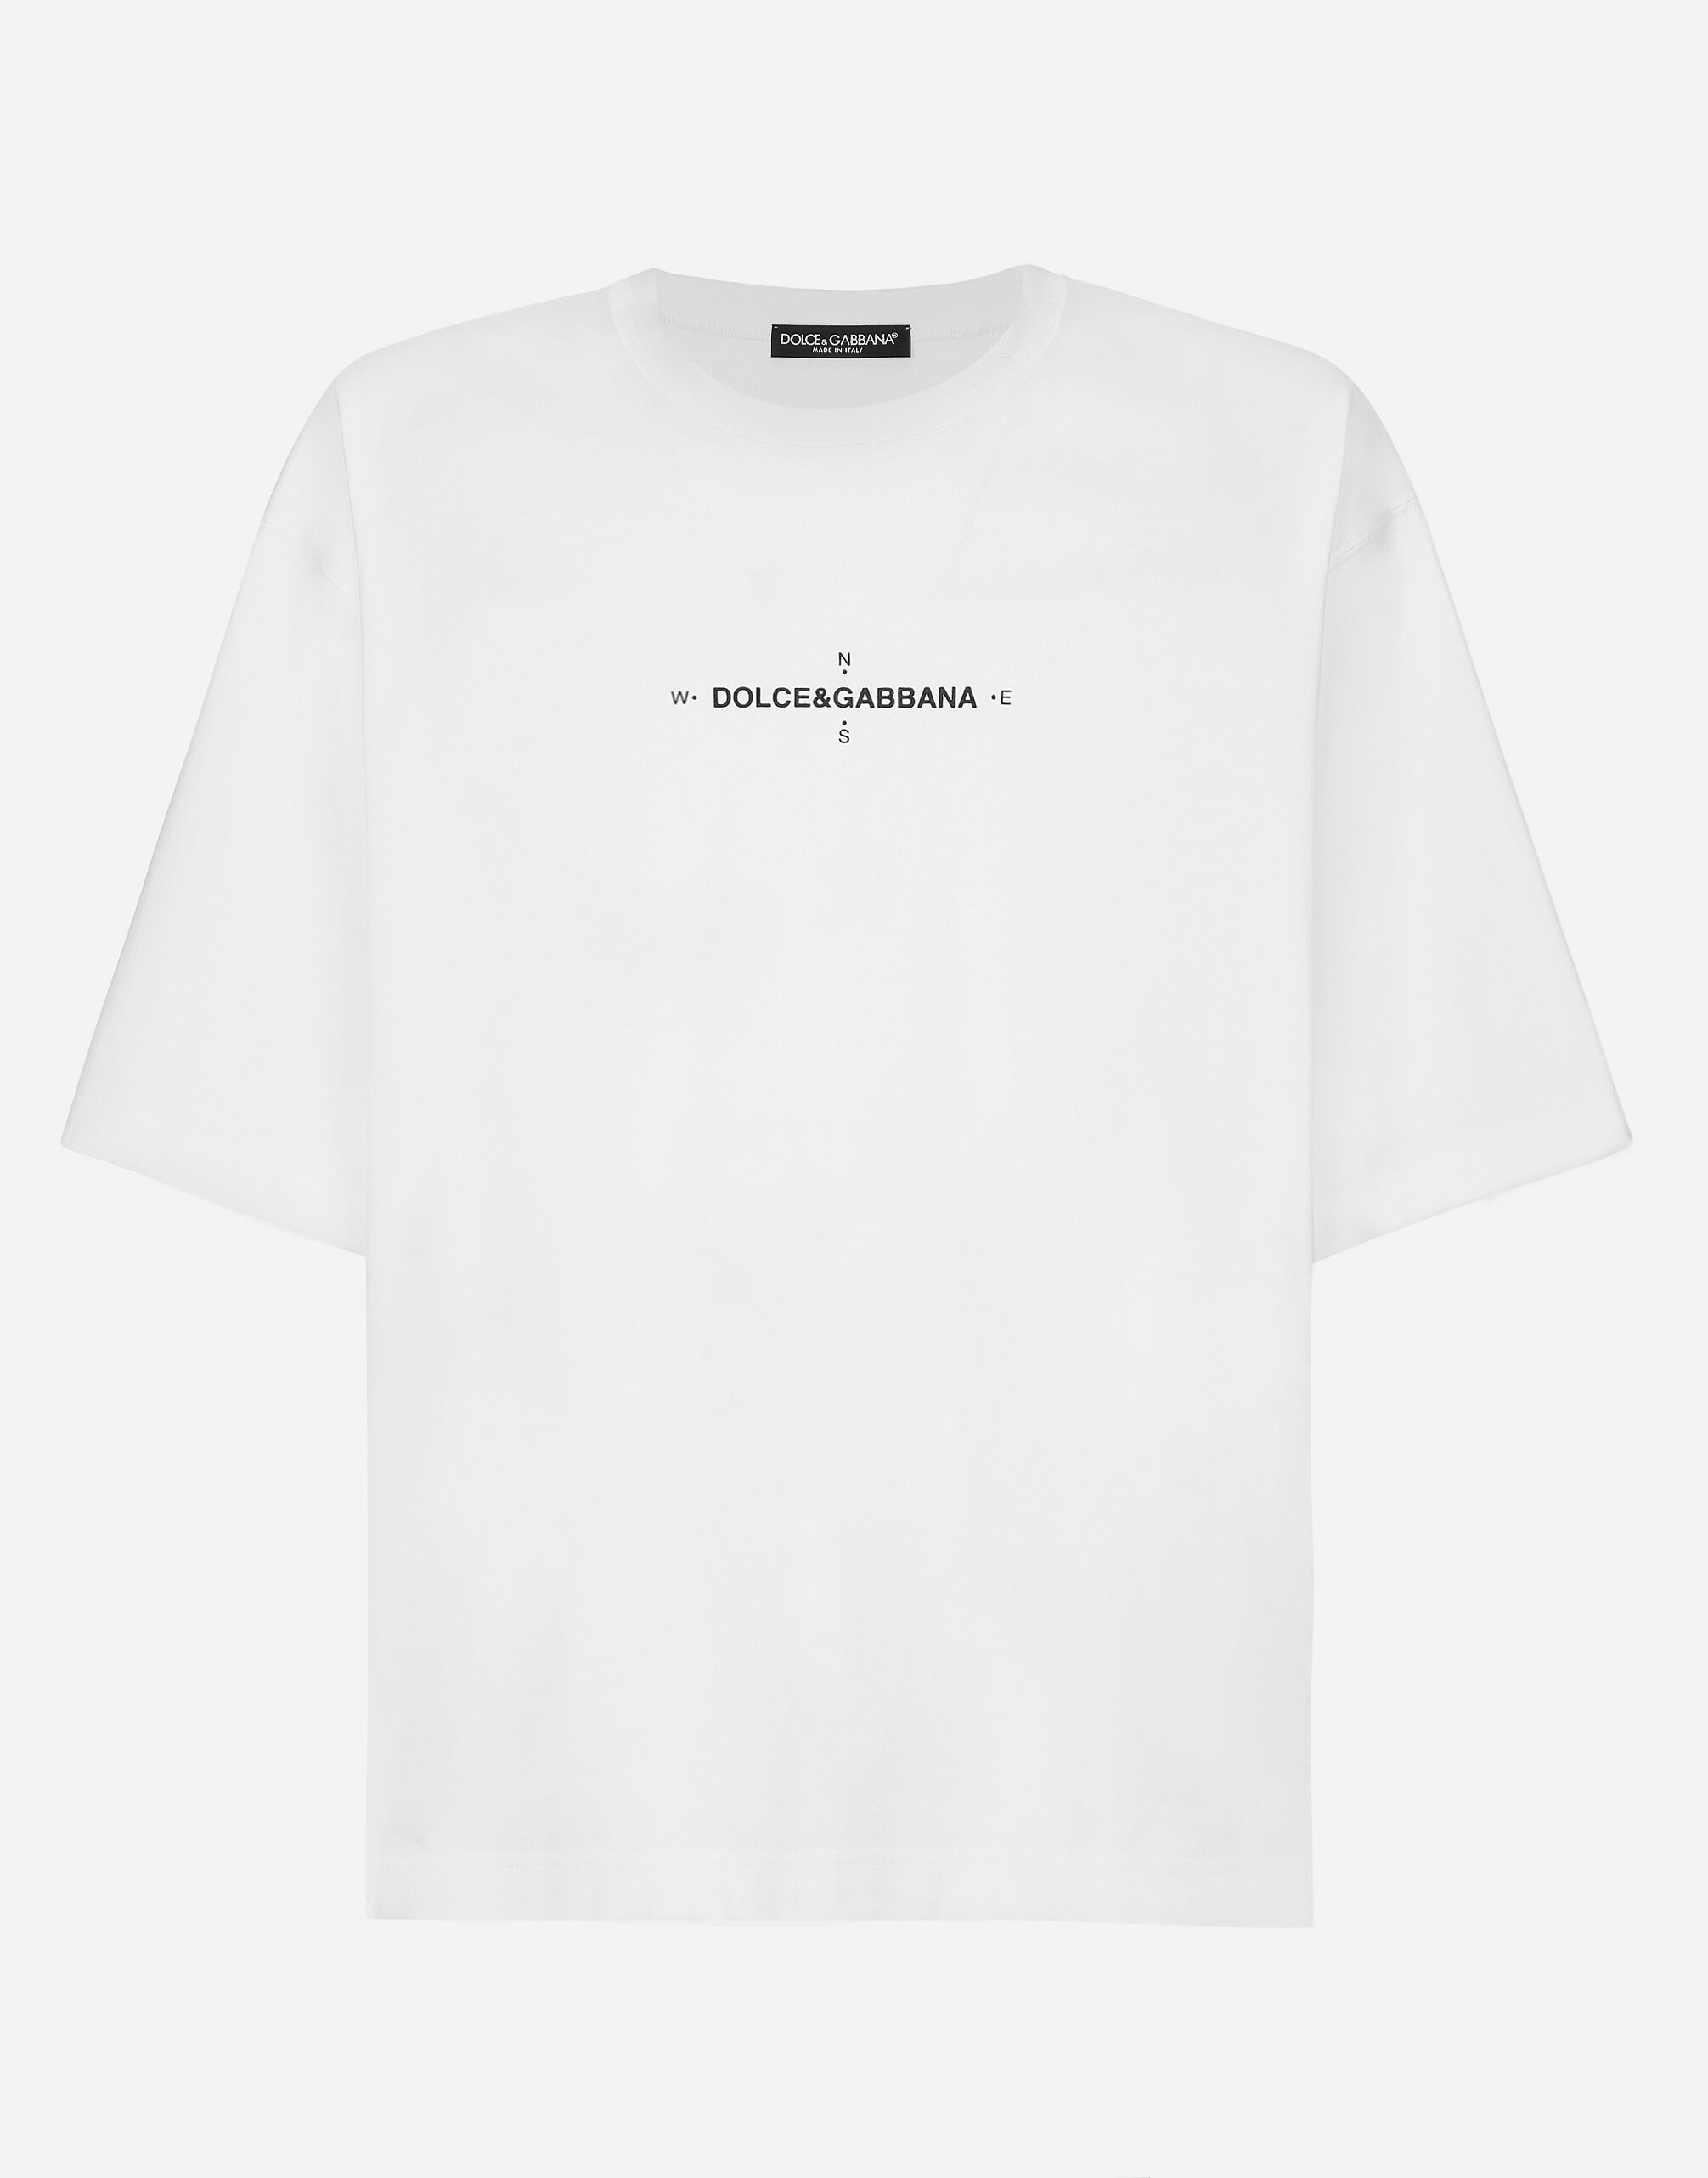 Dolce & Gabbana T-shirt manica corta stampa Marina Blu G5LN3DG8KF1